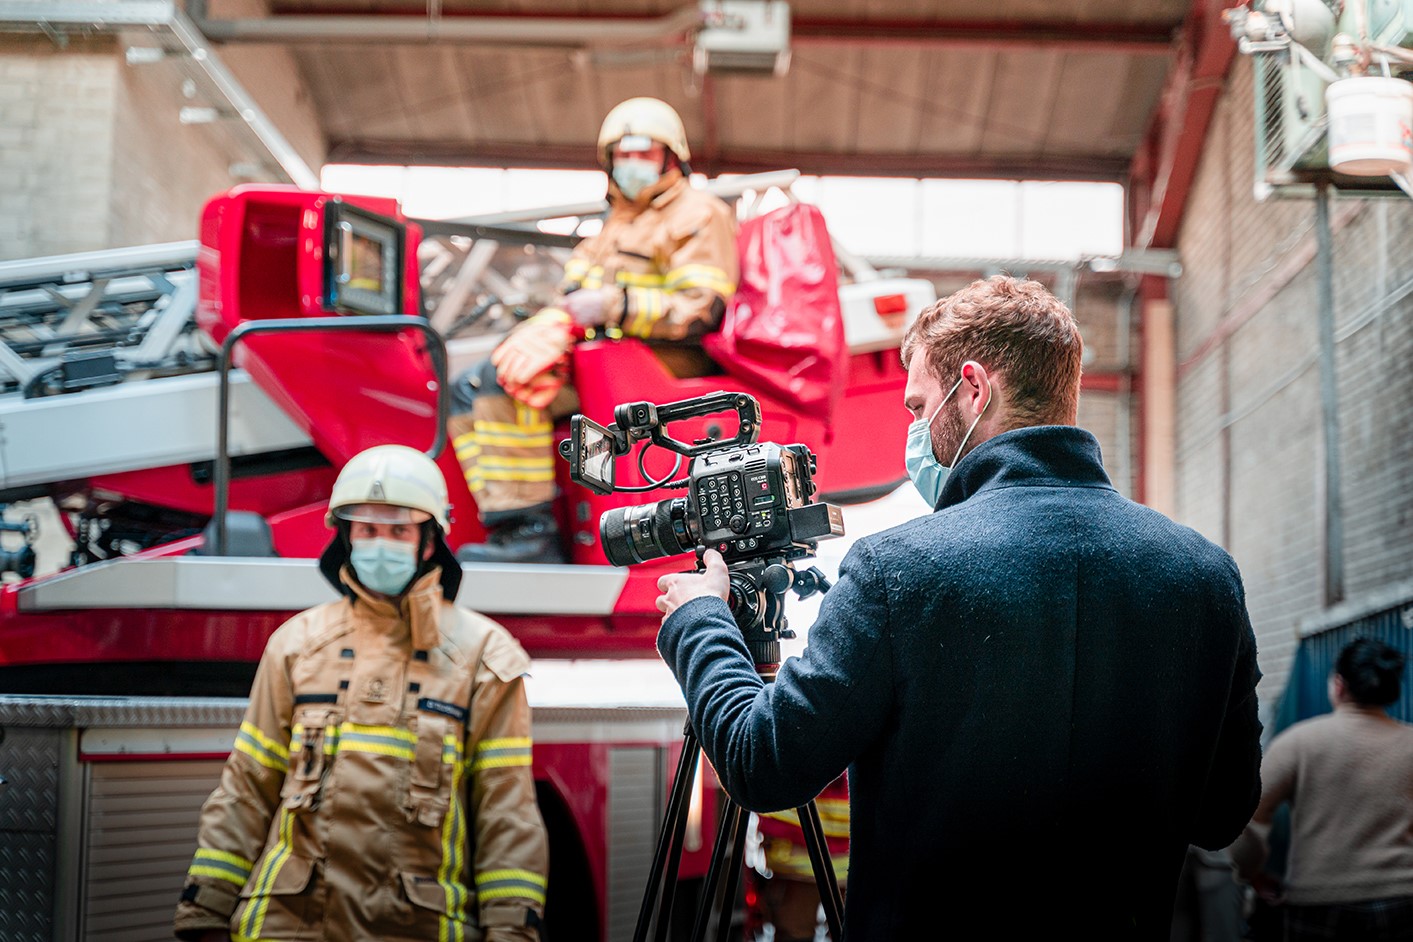 Zwei Feuerwehrleute in Monturwarten auf Anweisungen eines Filmemachers im Vordergrund der hinter seiner Kamera steht.